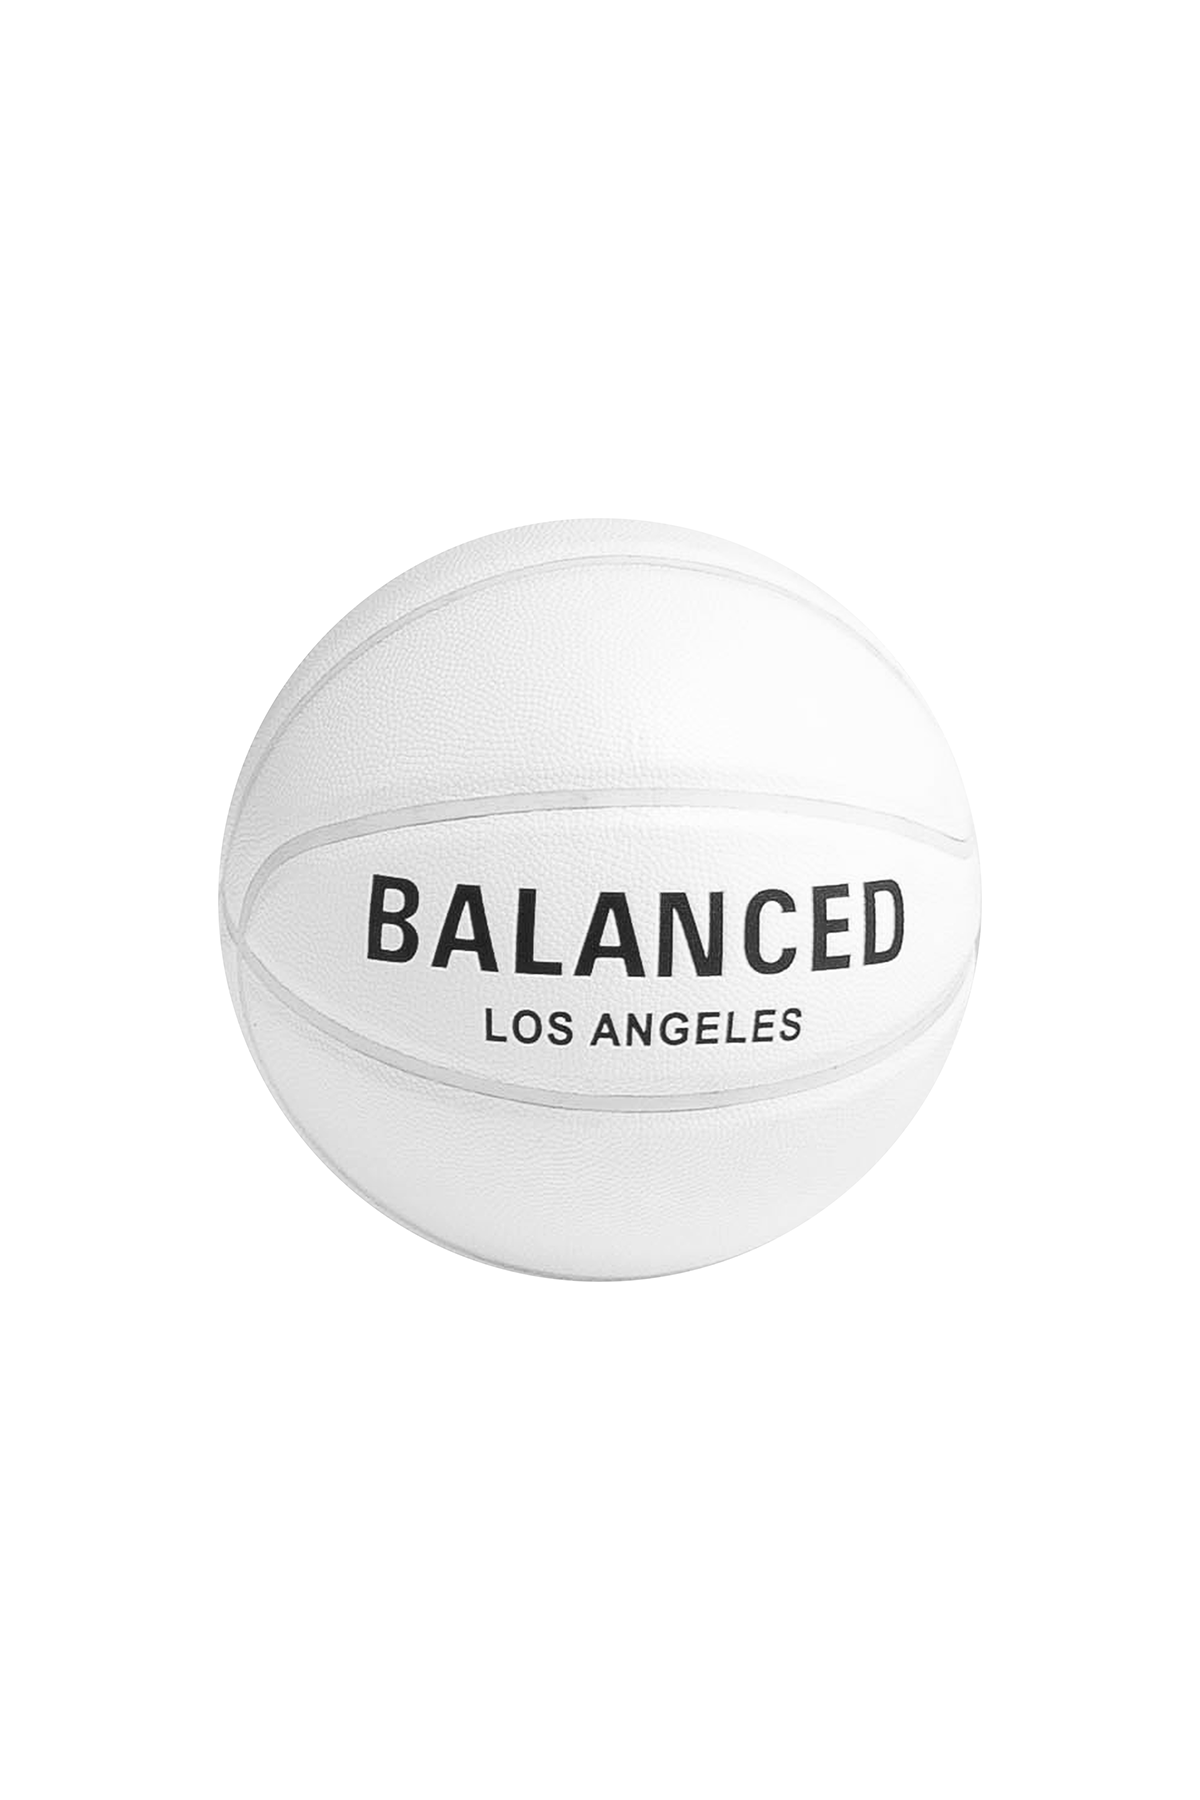 Balanced Basketball